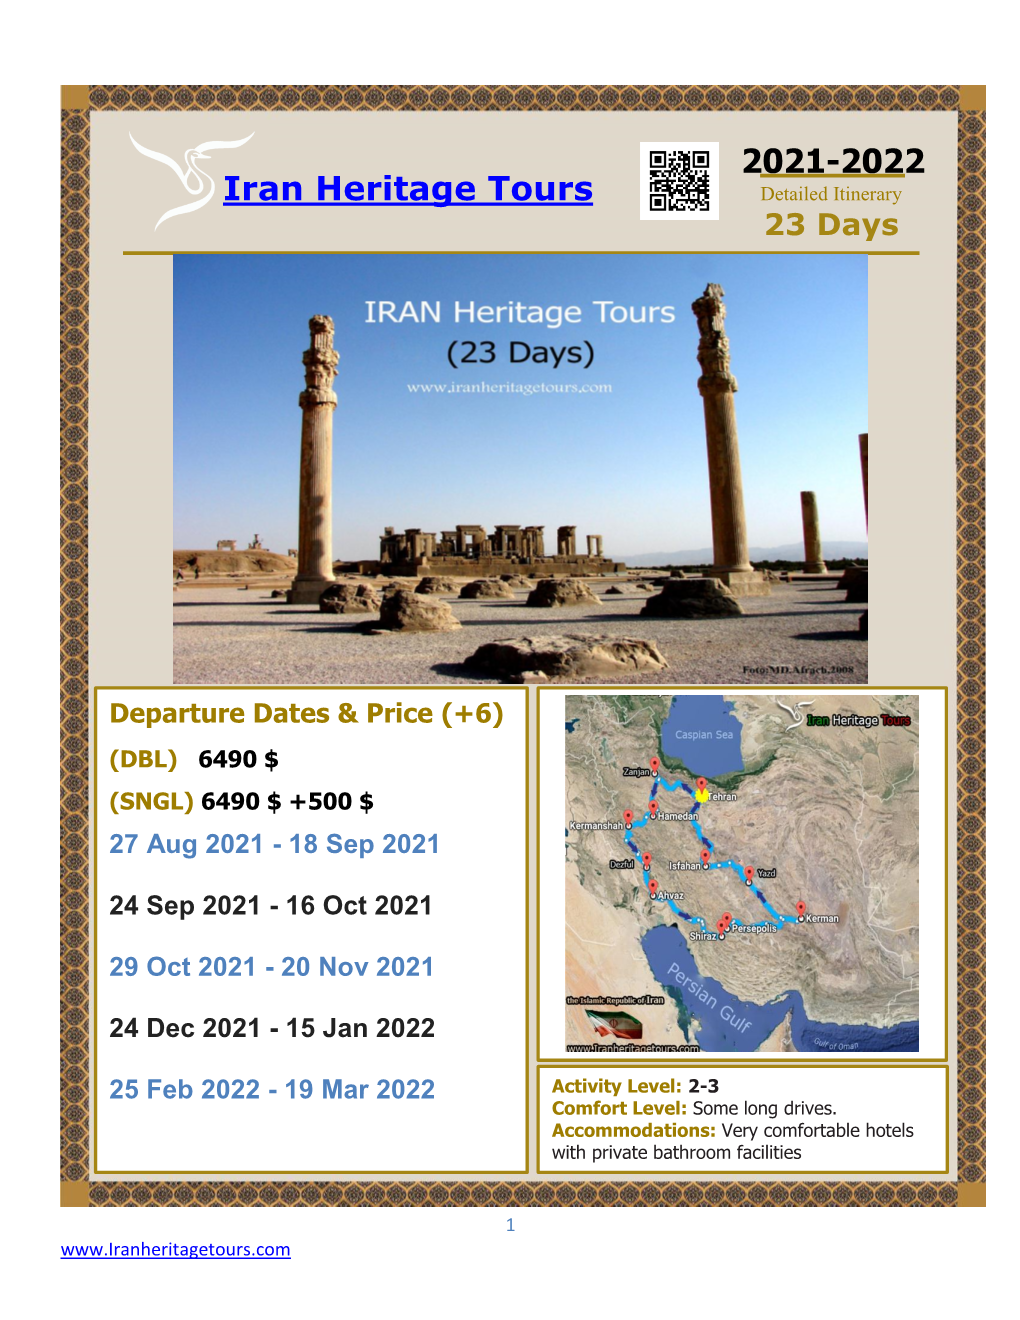 Iran Heritage Tours 2021-2022